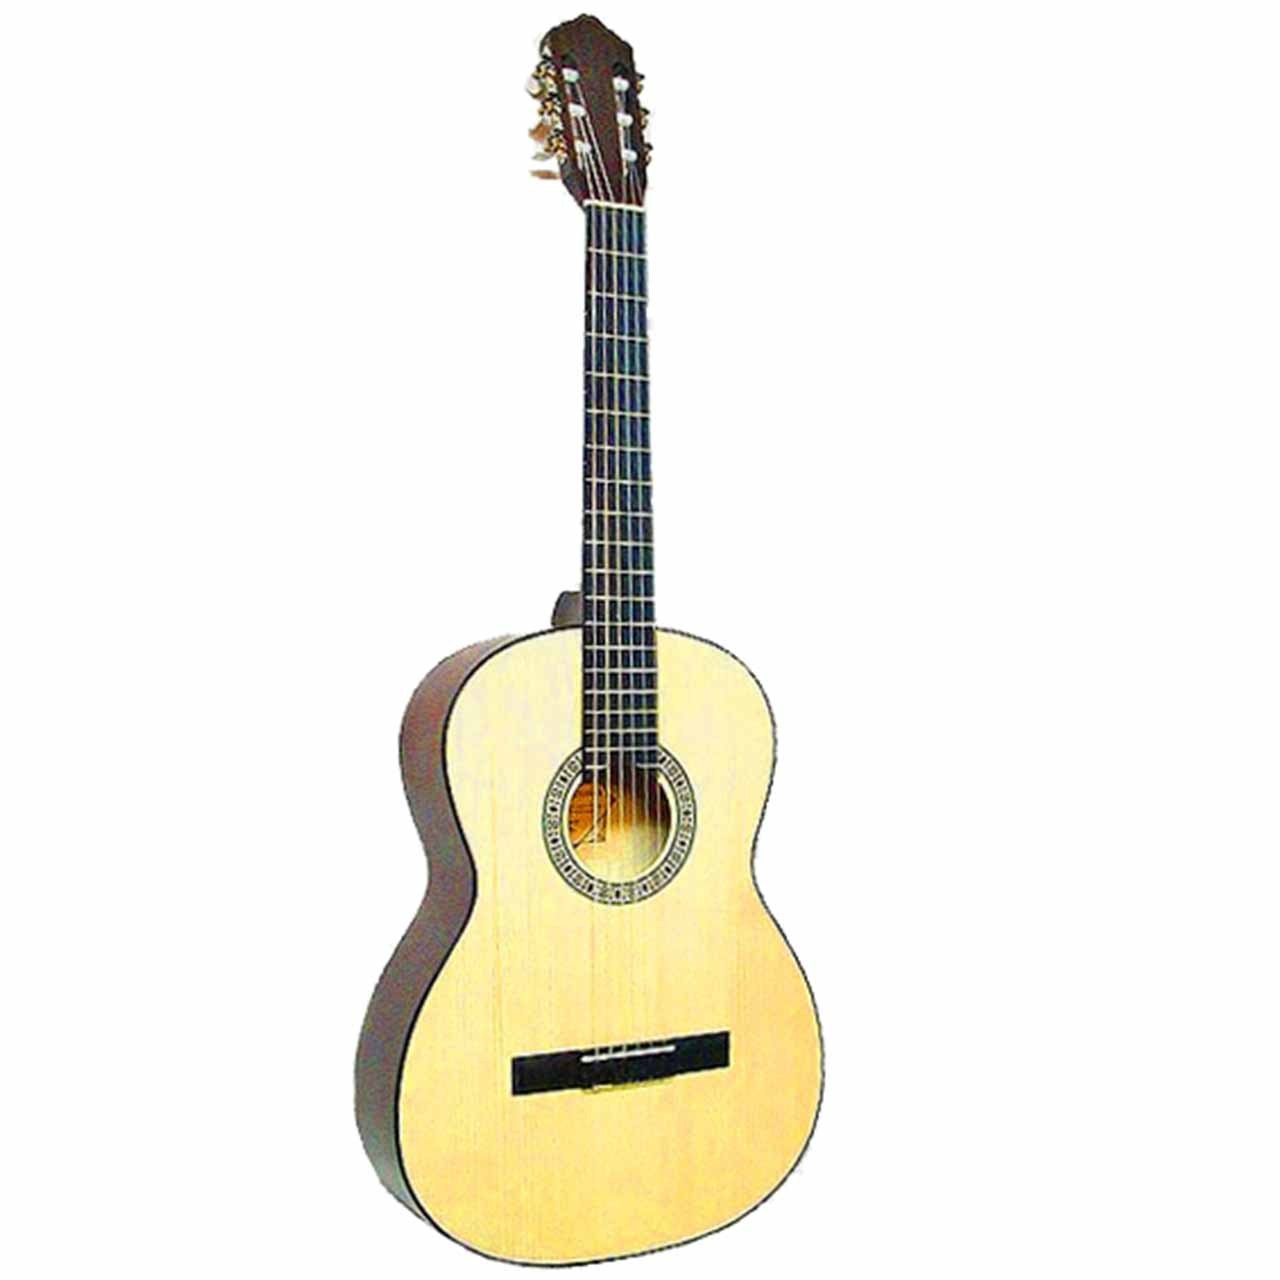 نکته خرید - قیمت روز گیتار کلاسیک اشترونال مدل 4670 خرید